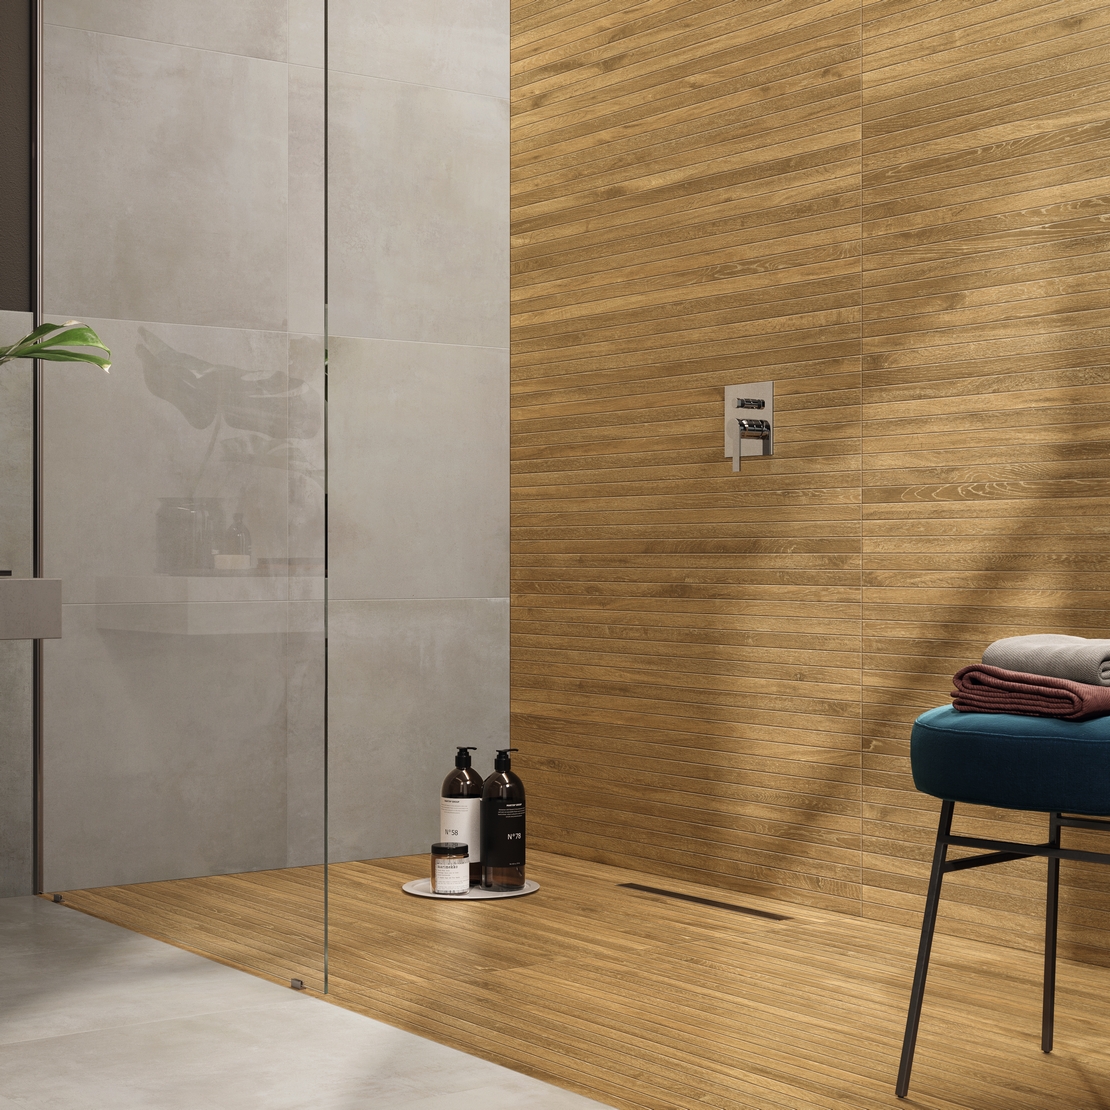 Modernes Badezimmer im industriellen Stil mit Dusche,grauer Zementoptik und luxuriösem Holz - Inspirationen Iperceramica